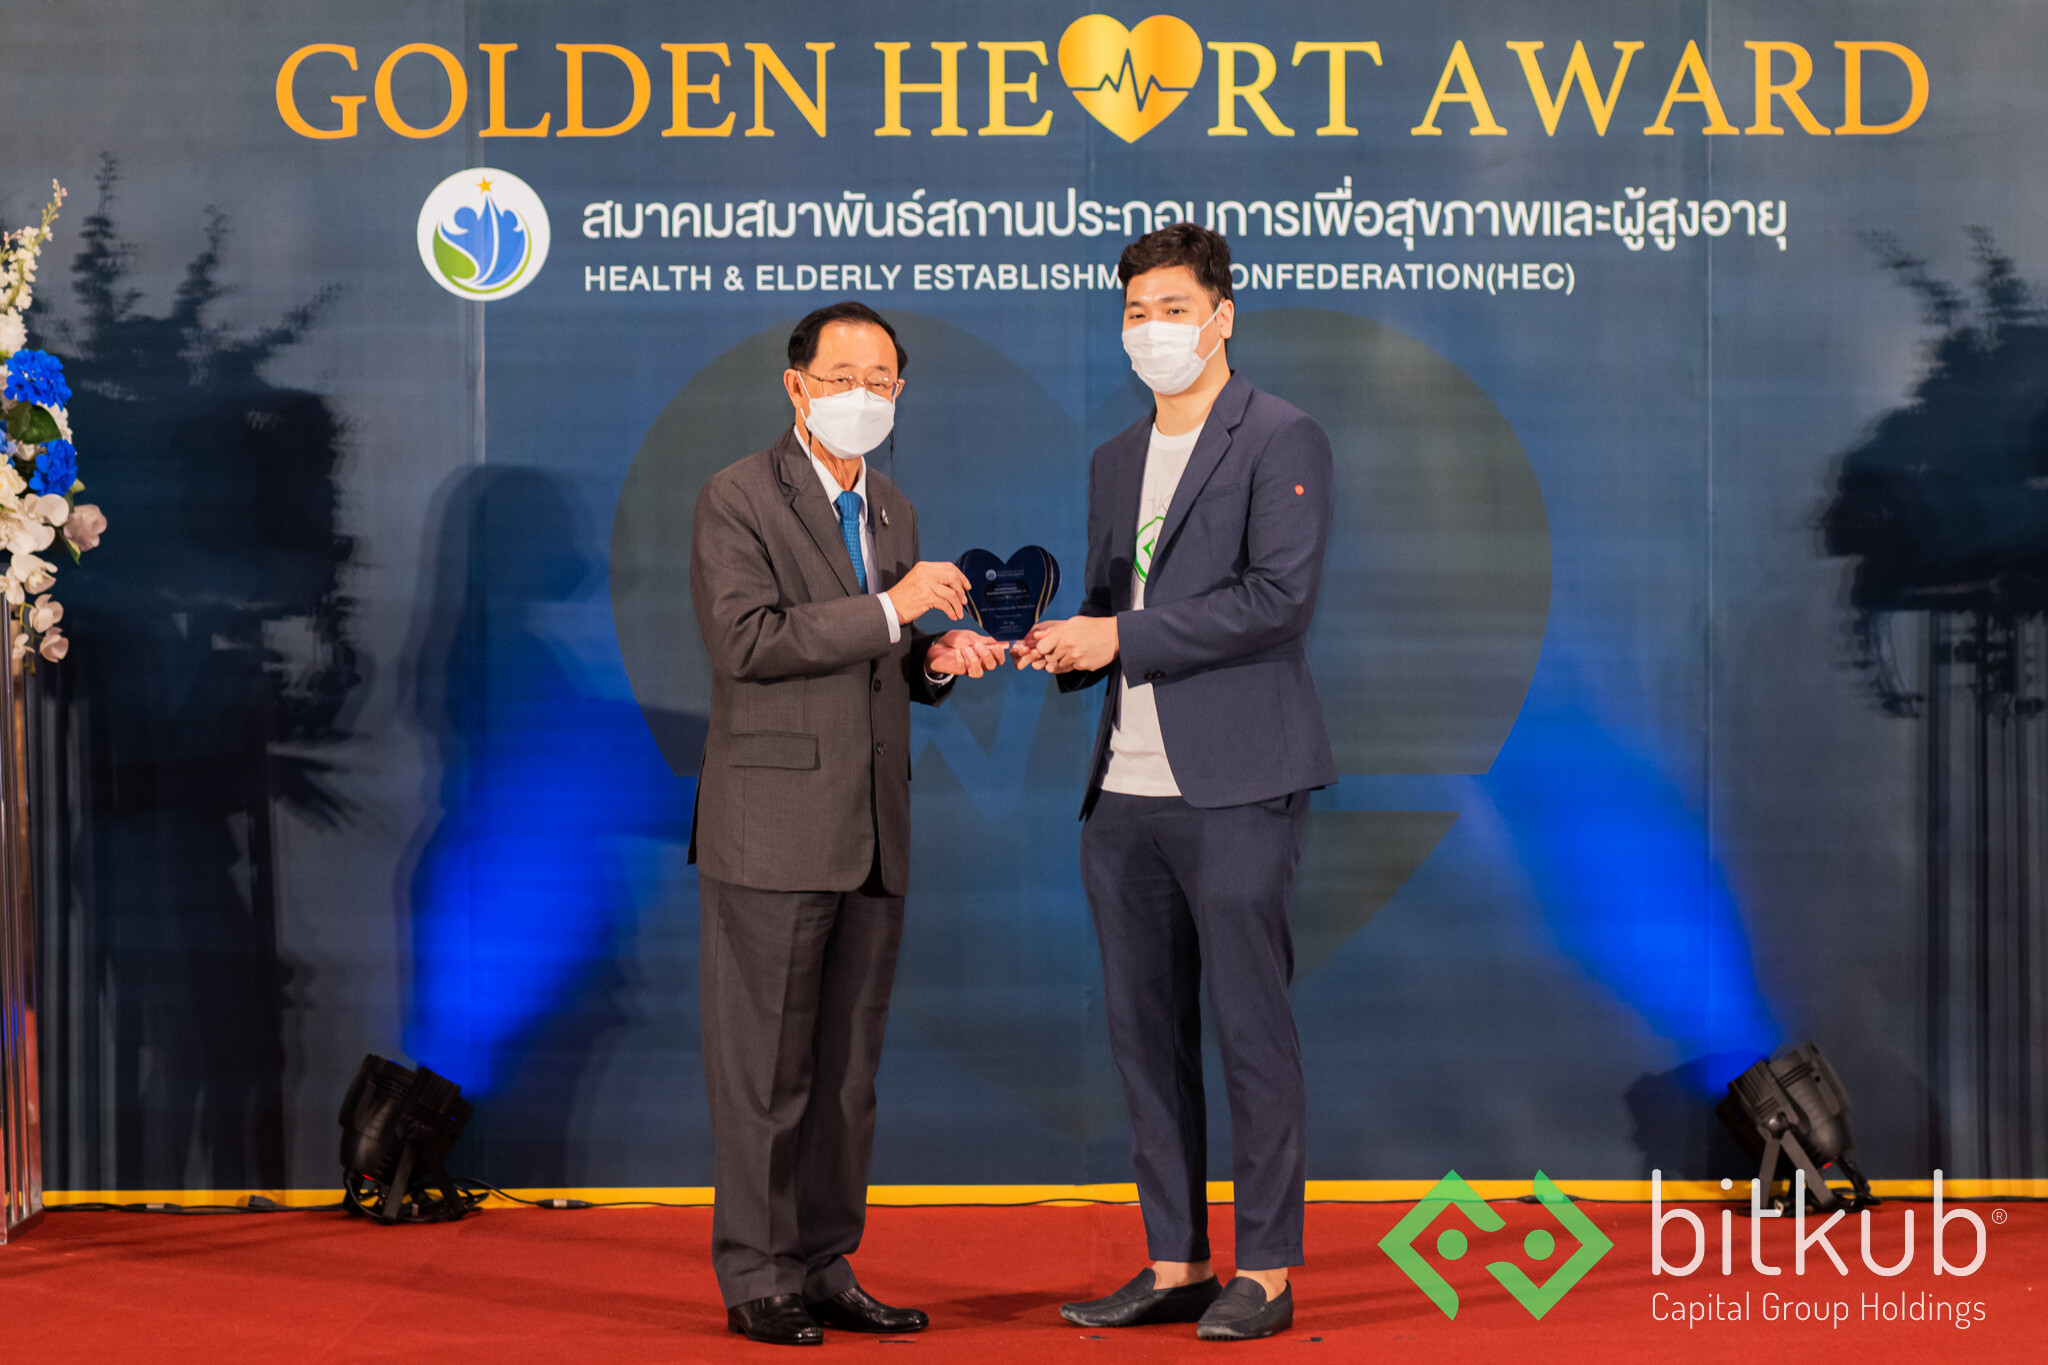 บิทคับ คว้ารางวัล "GOLDEN HEART AWARD 2021" ในฐานะองค์กรที่มุ่งช่วยเหลือประชาชนและบรรเทาภัยโควิด-19